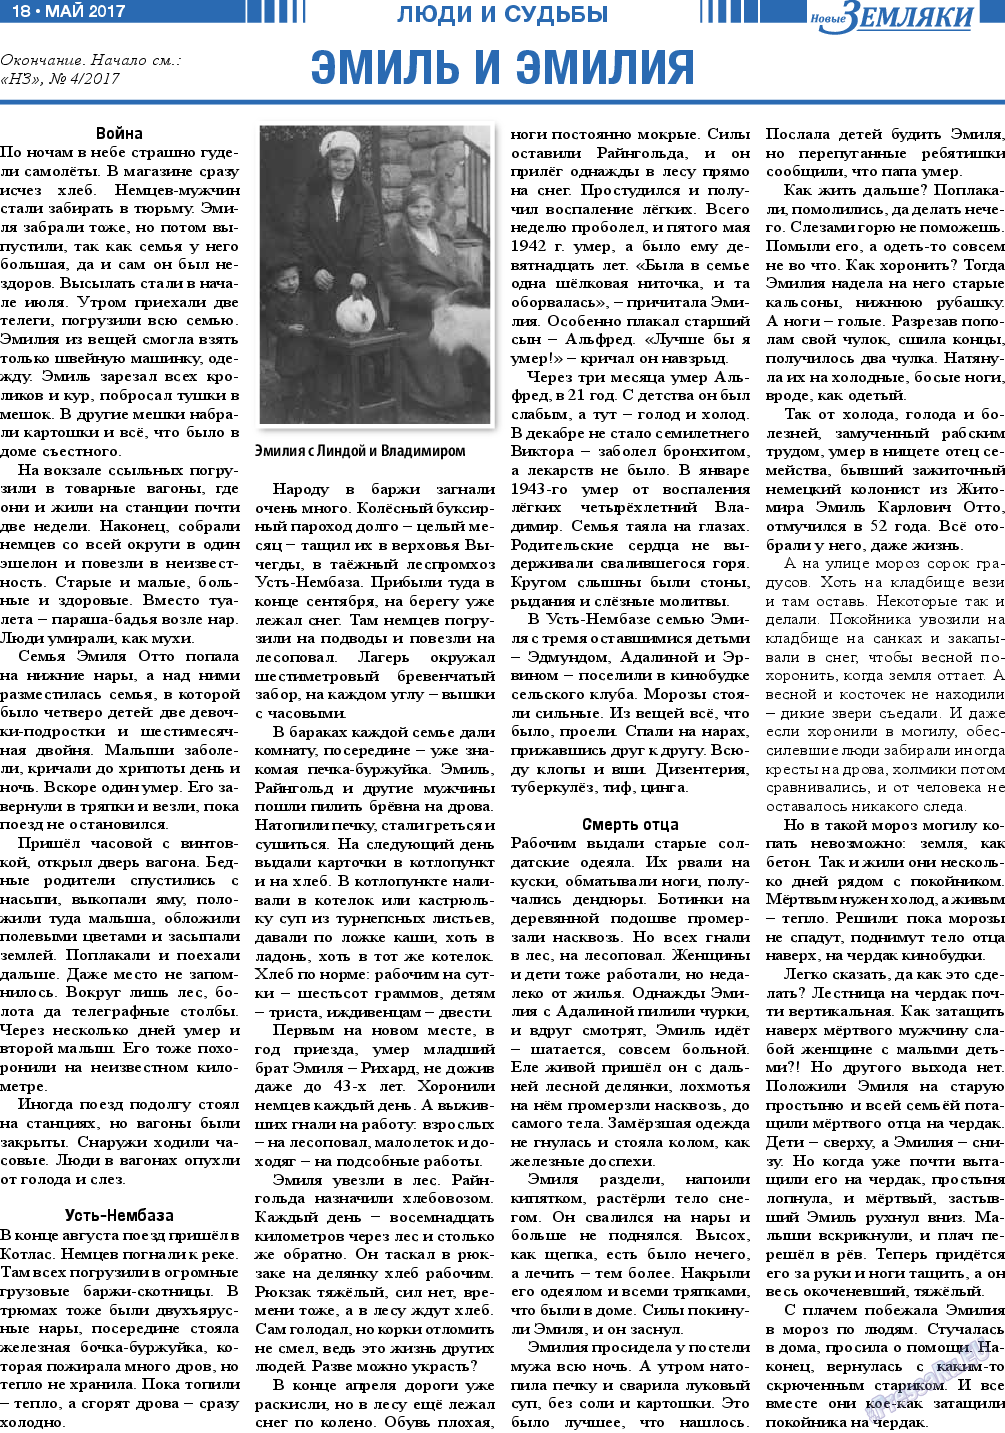 Новые Земляки (газета). 2017 год, номер 5, стр. 18